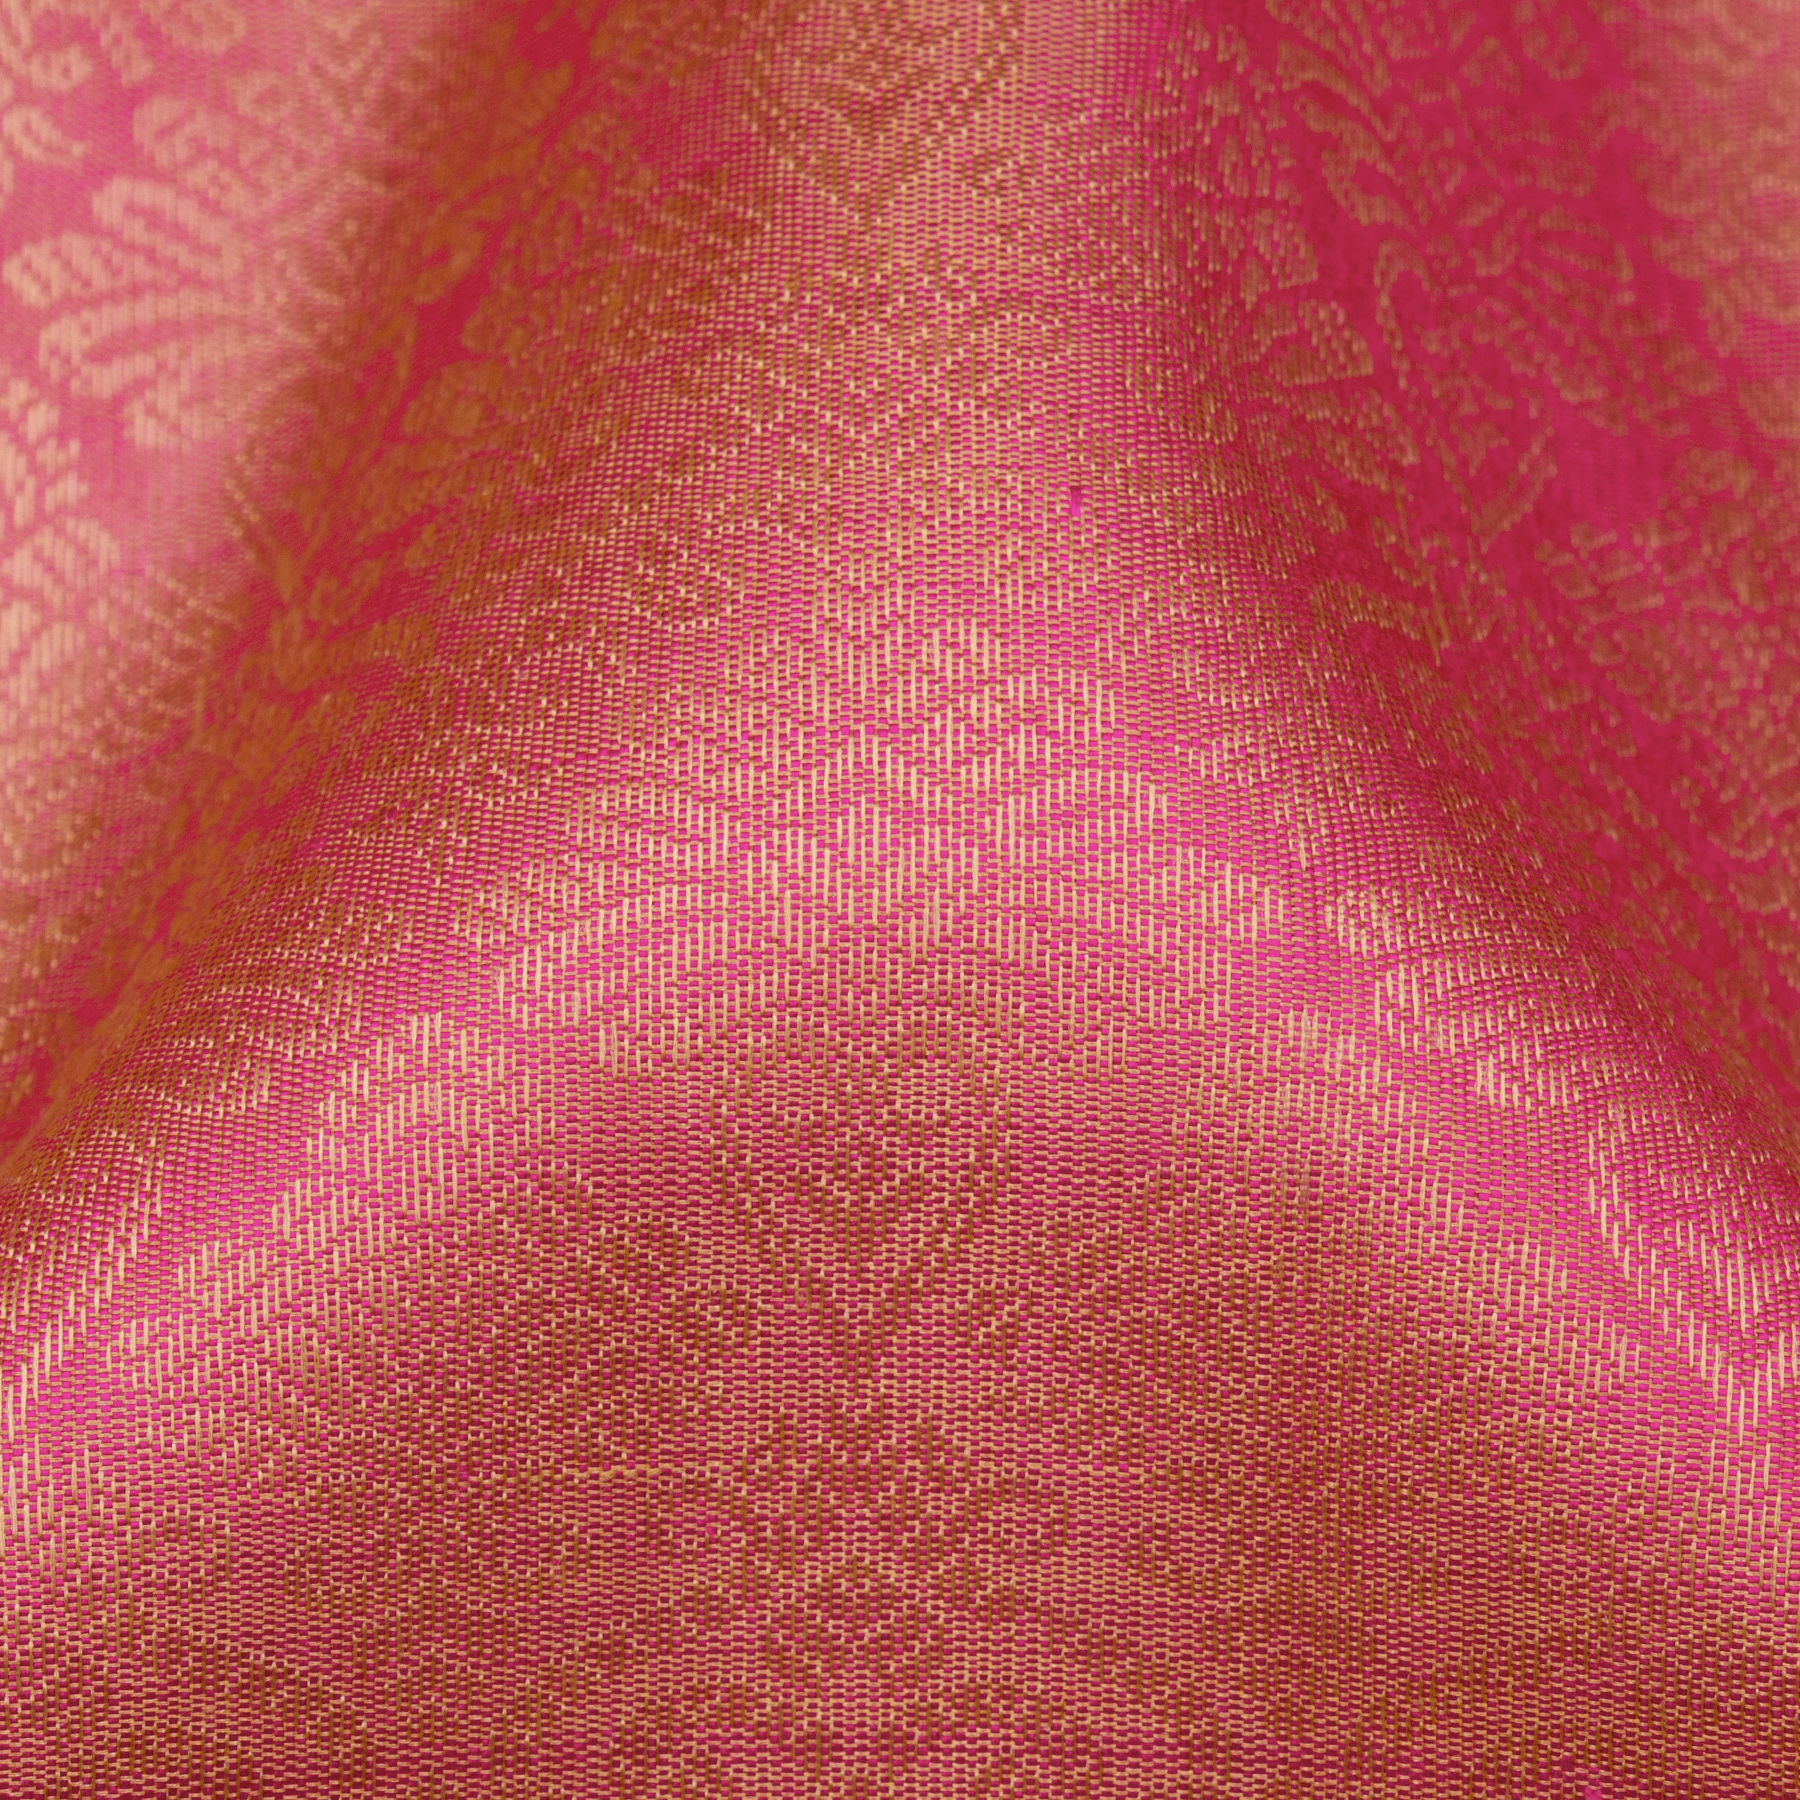 Kanakavalli Kanjivaram Silk Sari 23-599-HS001-11197 - Fabric View